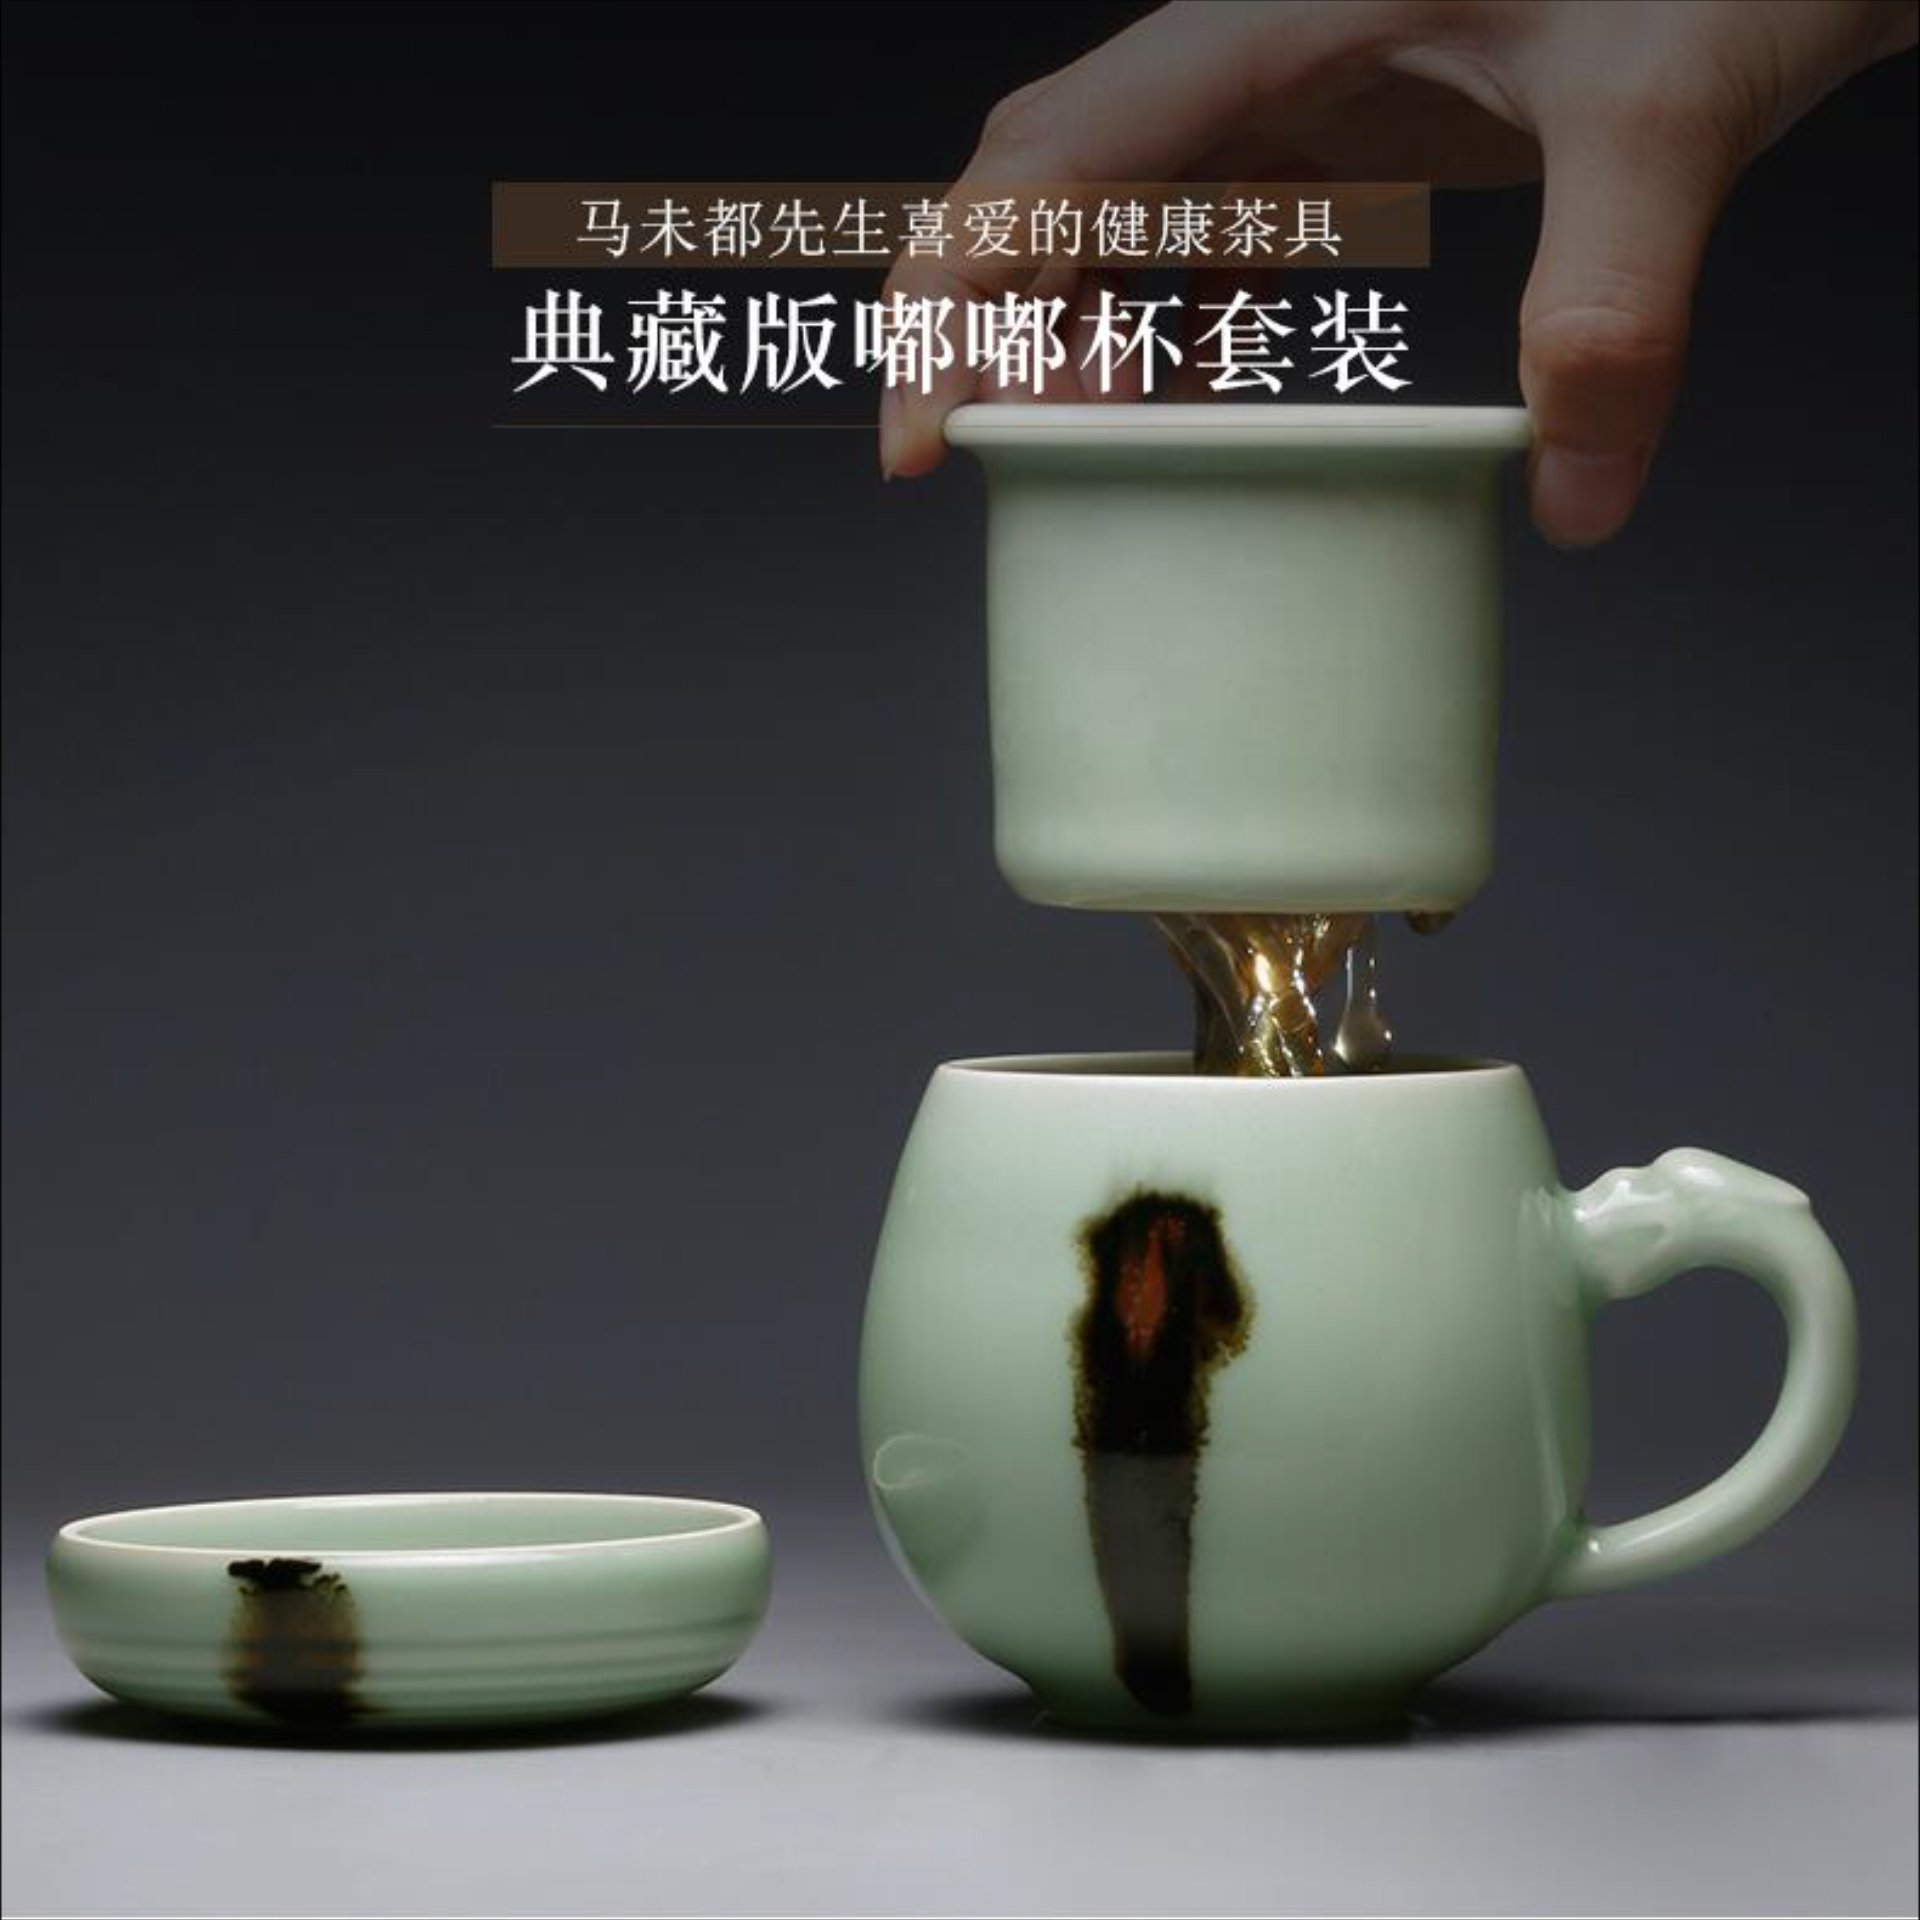 典藏版嘟嘟杯套装  龙泉青瓷茶杯陶瓷过滤